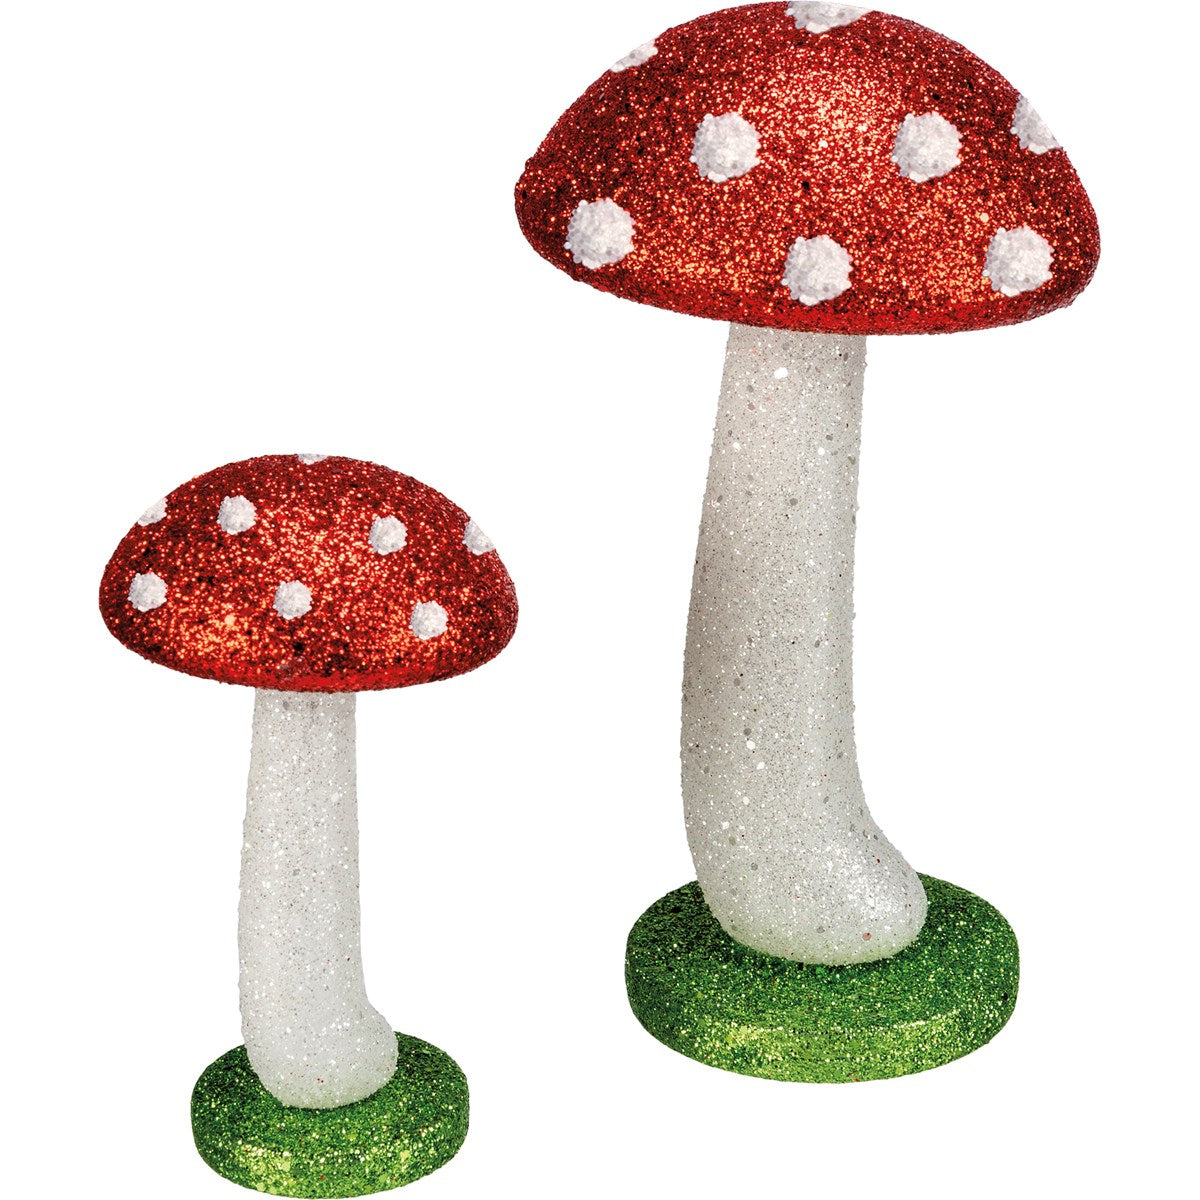 Mushroom Figurine